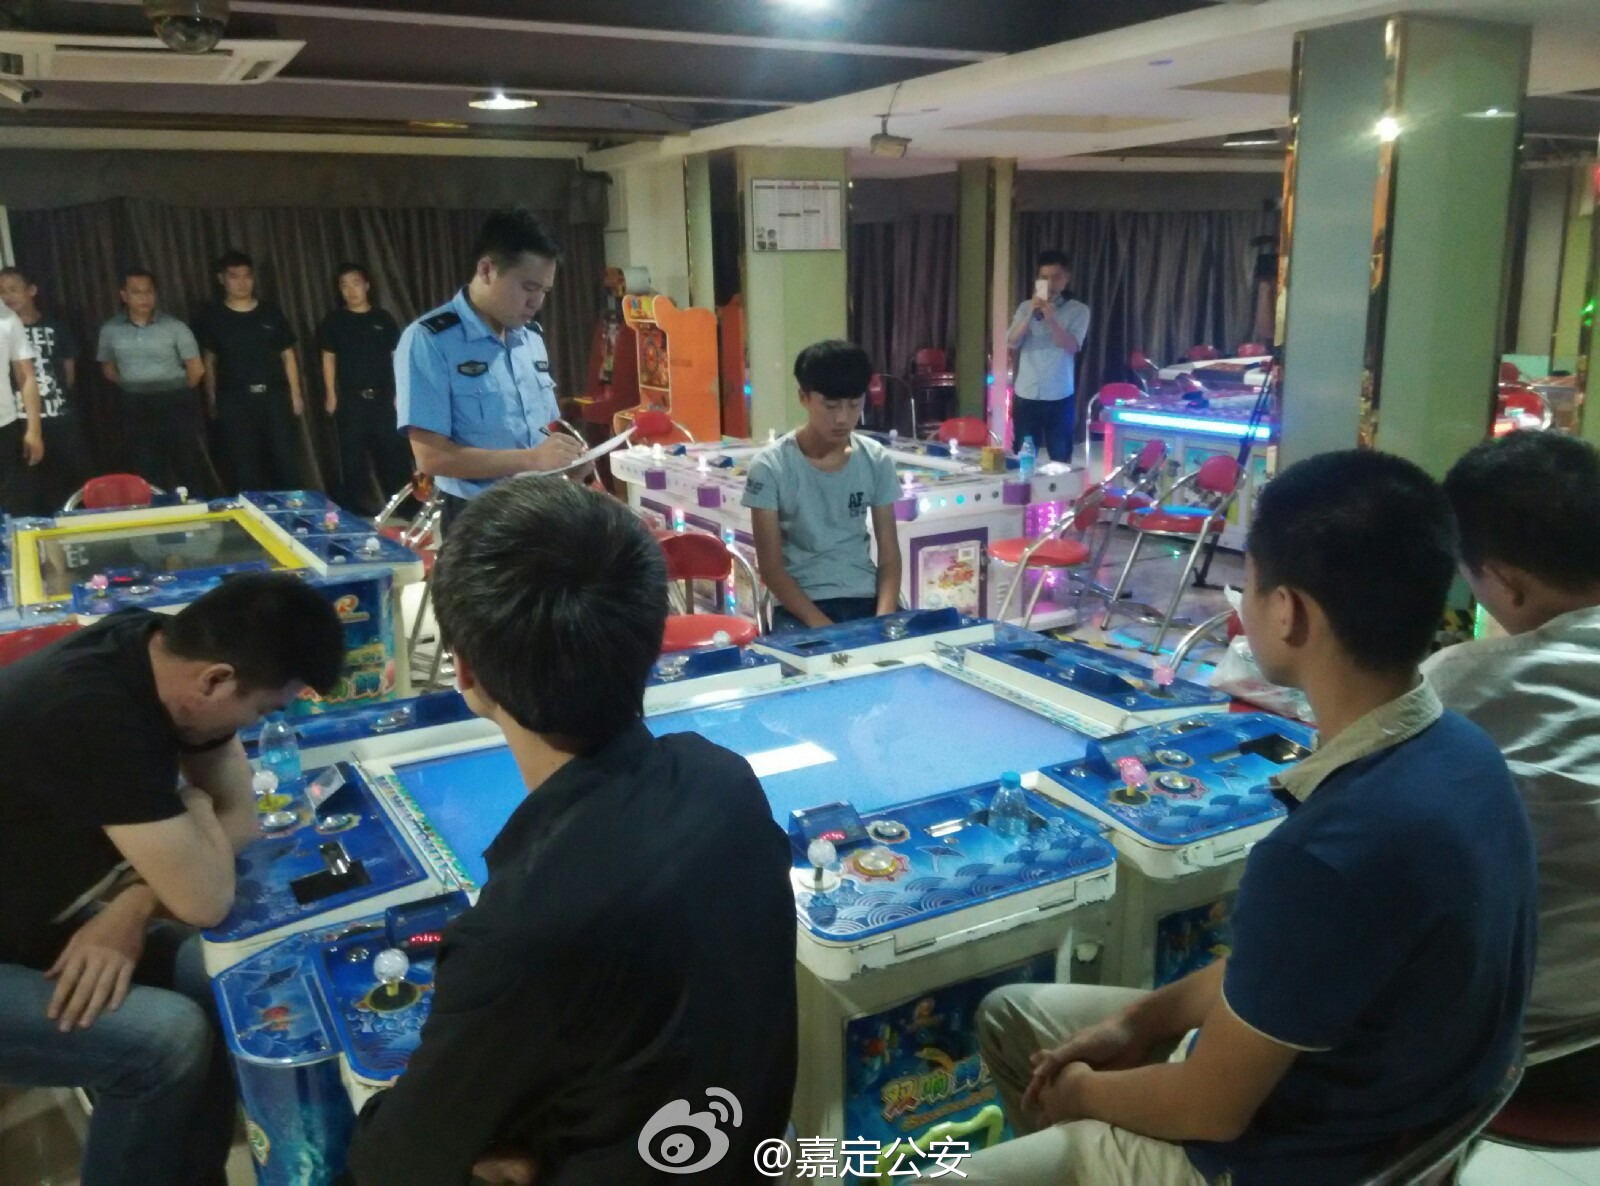 上海万达广场3家赌场被查 随便玩玩可输几十万